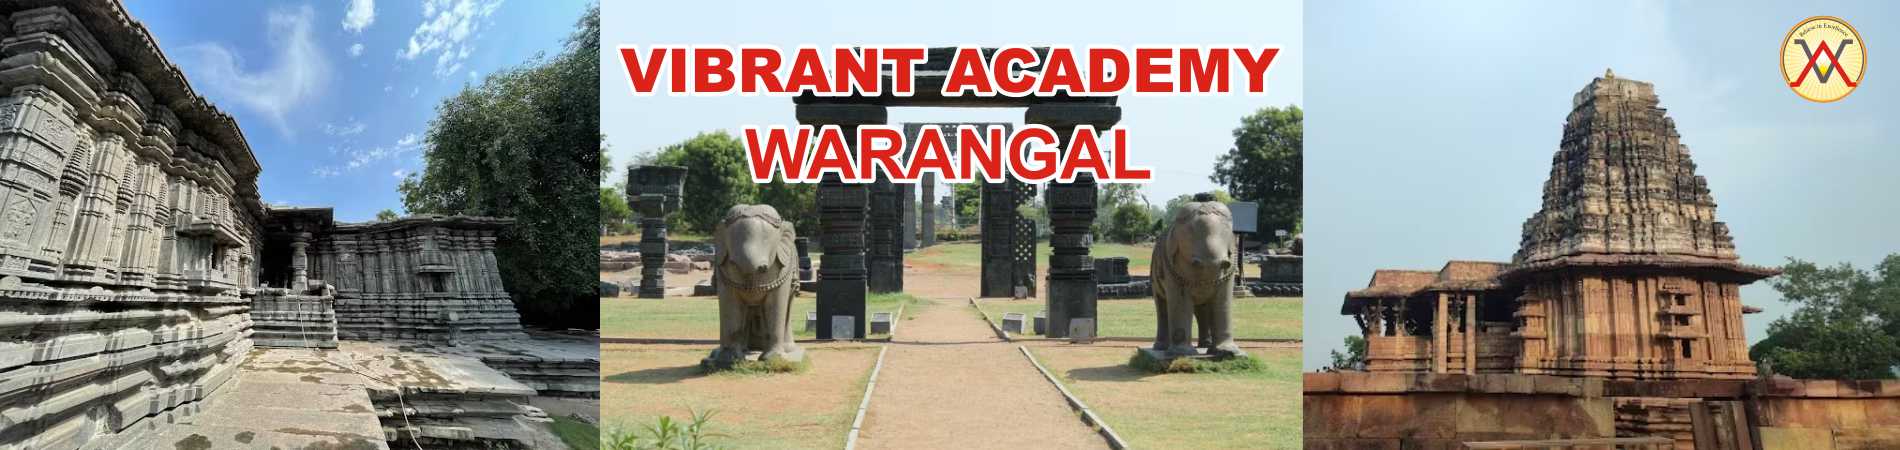 Vibrant Academy Warangal